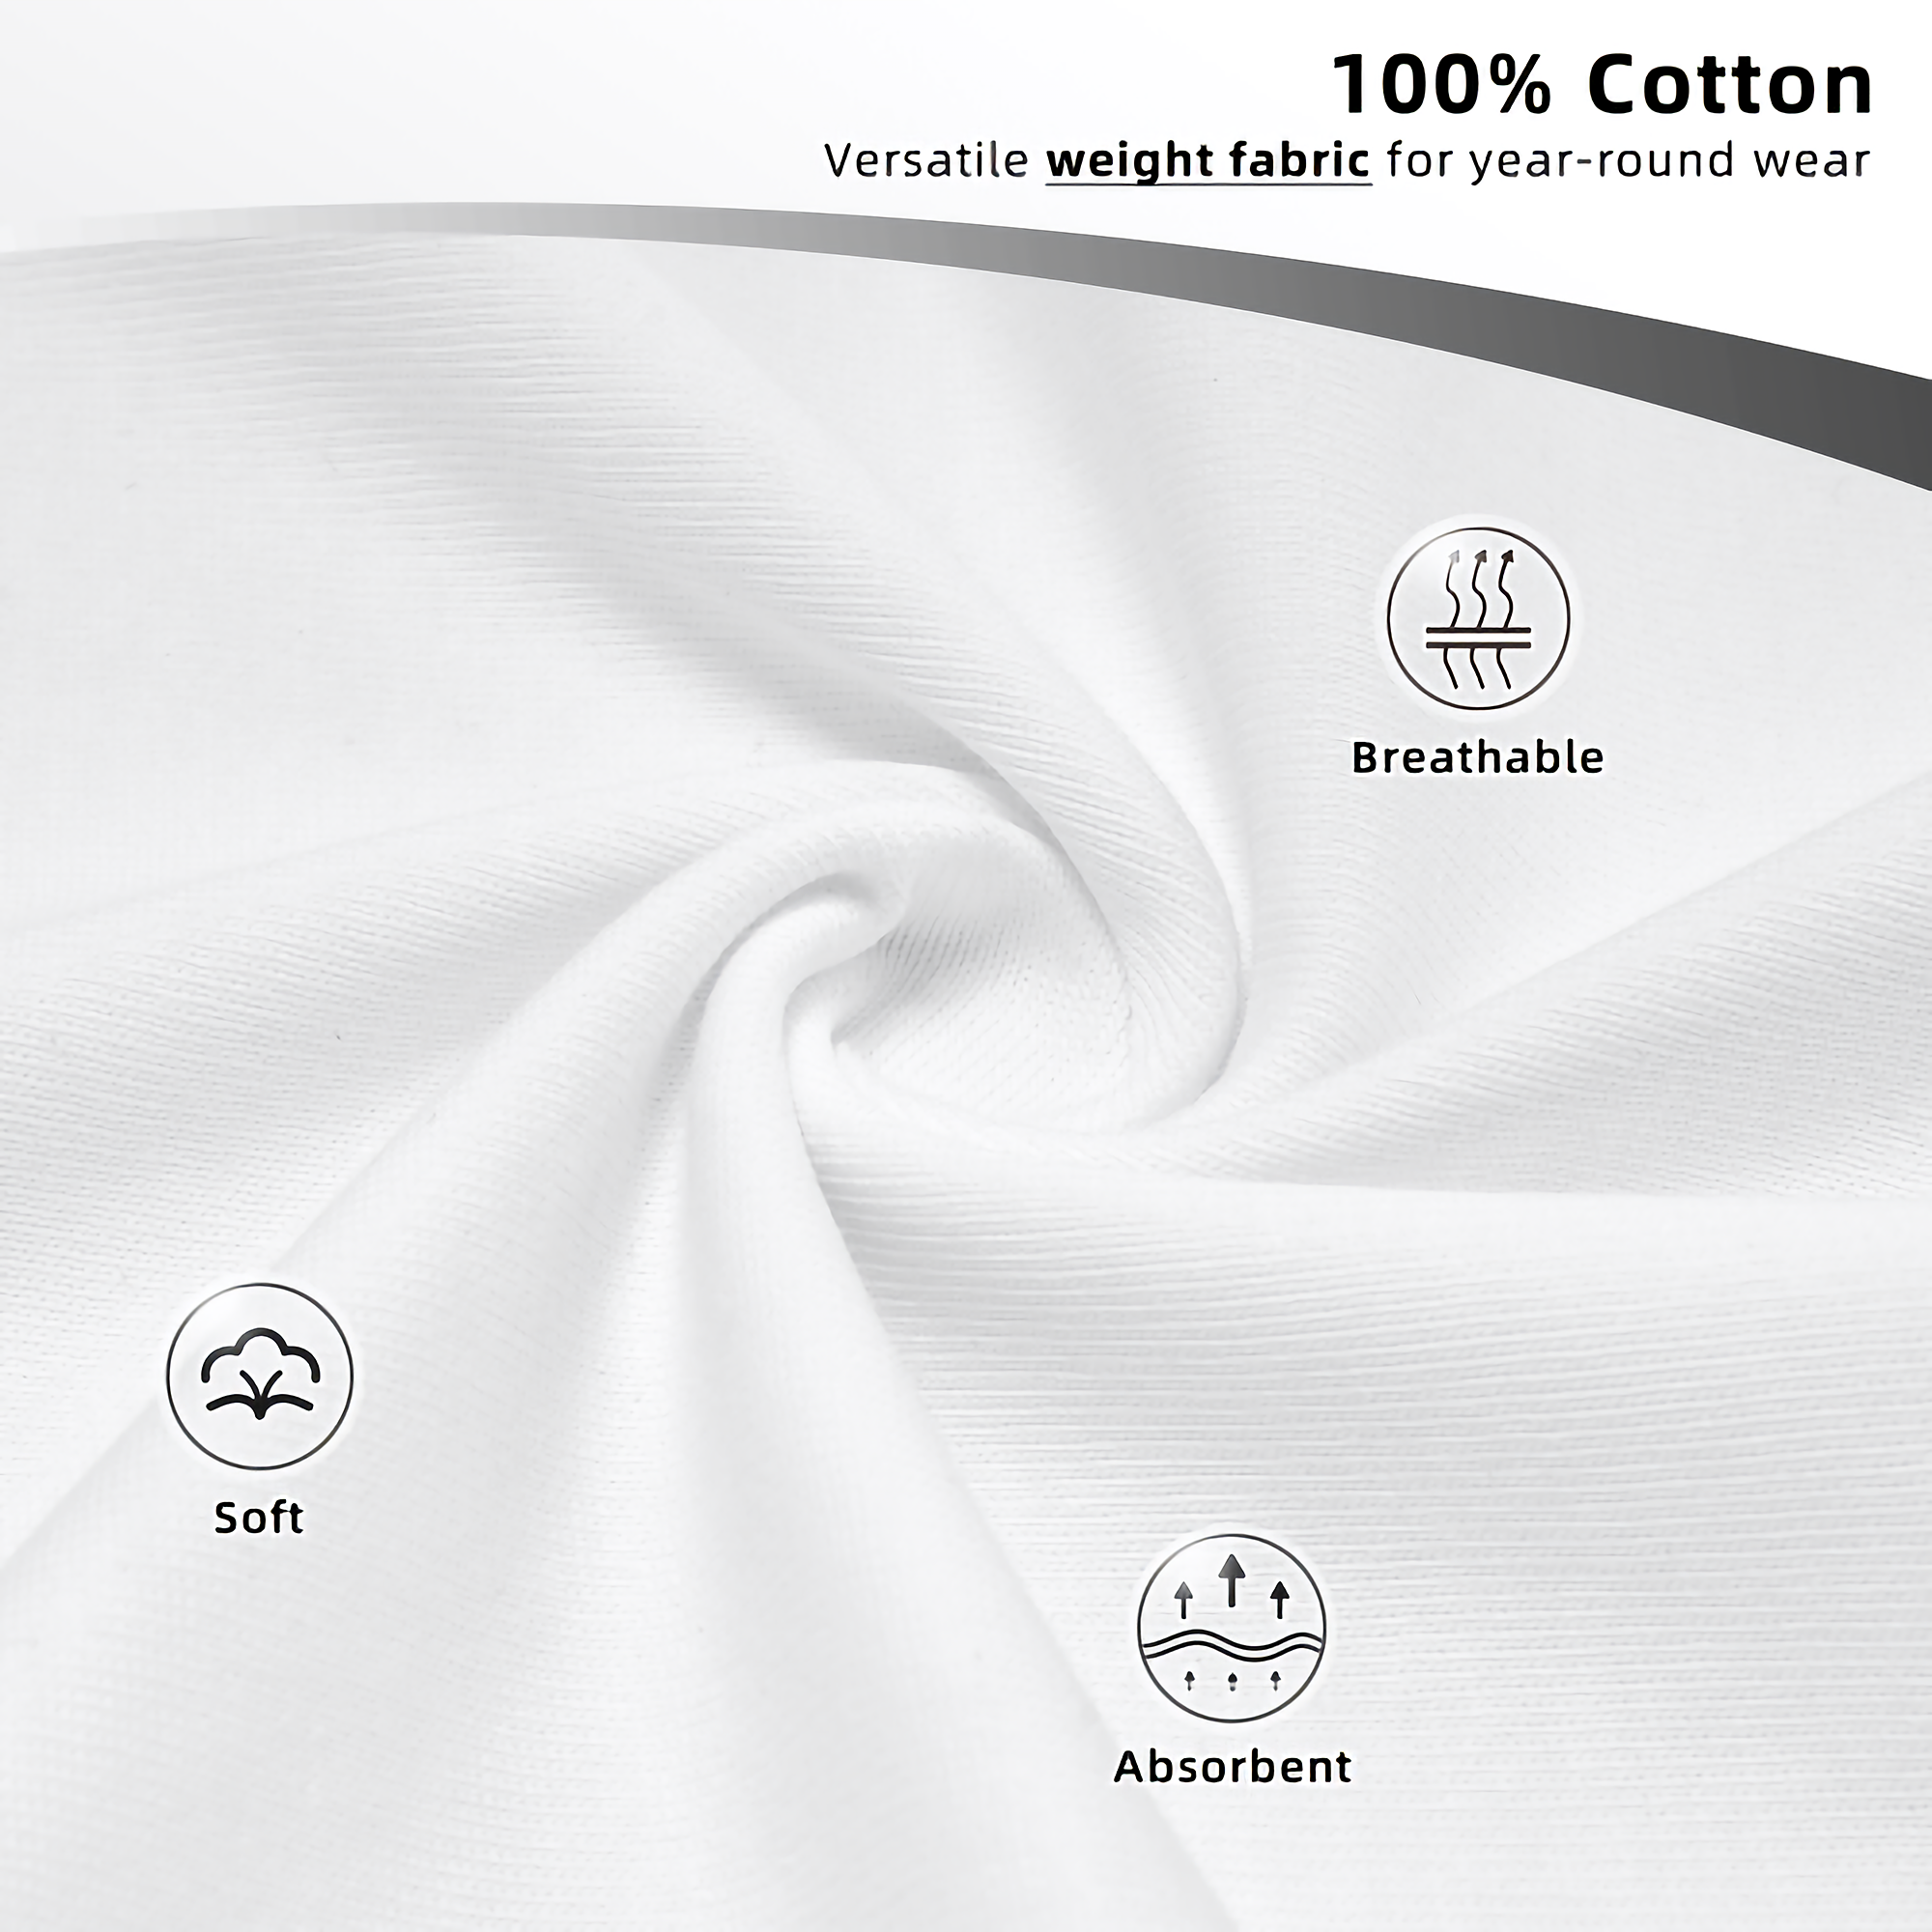 Men's Premium Thick Cotton T-Shirt